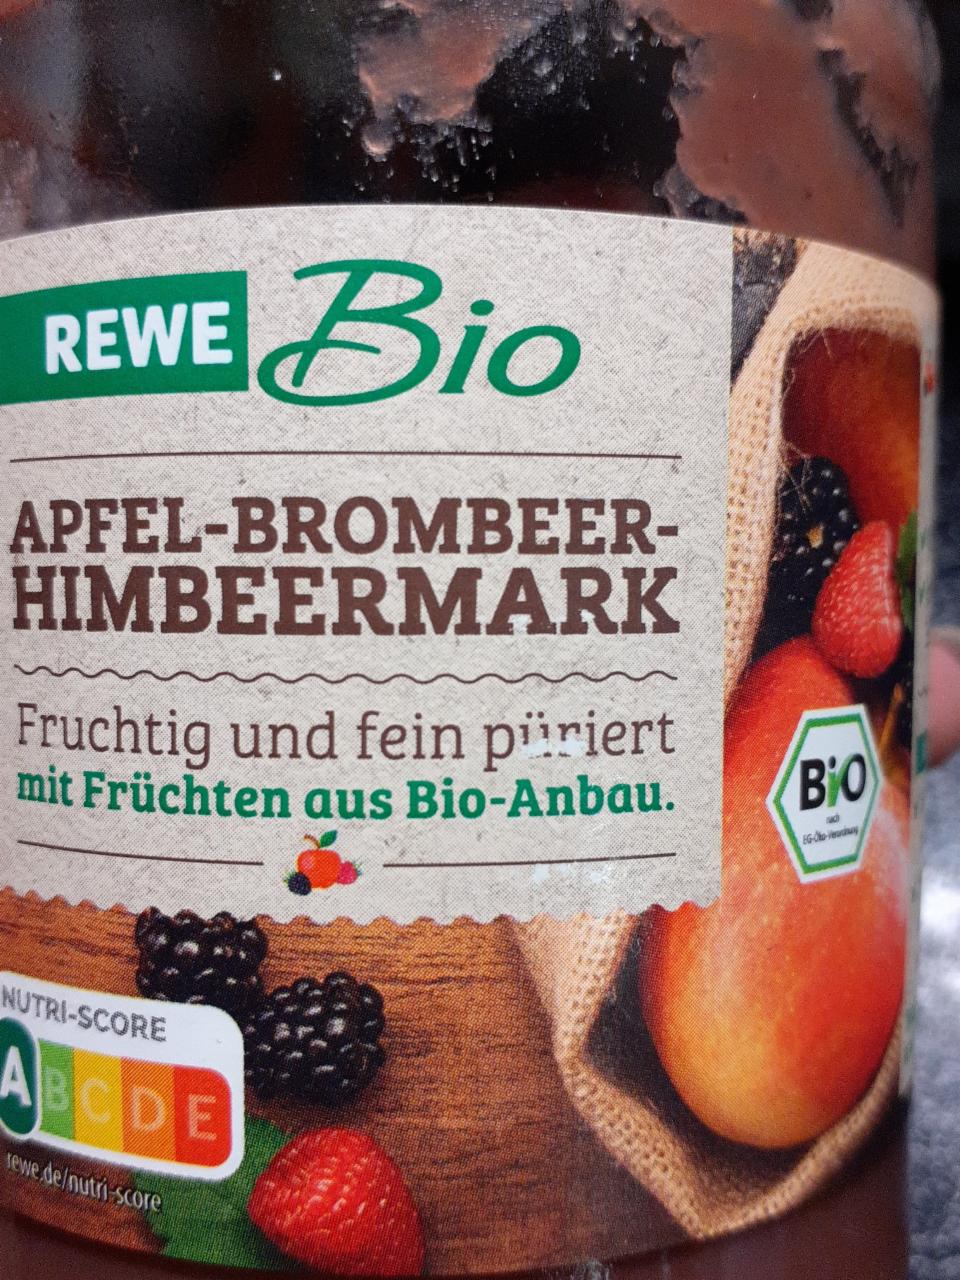 Fotografie - Apfel-Brombeer-Himbeermark REWE Bio